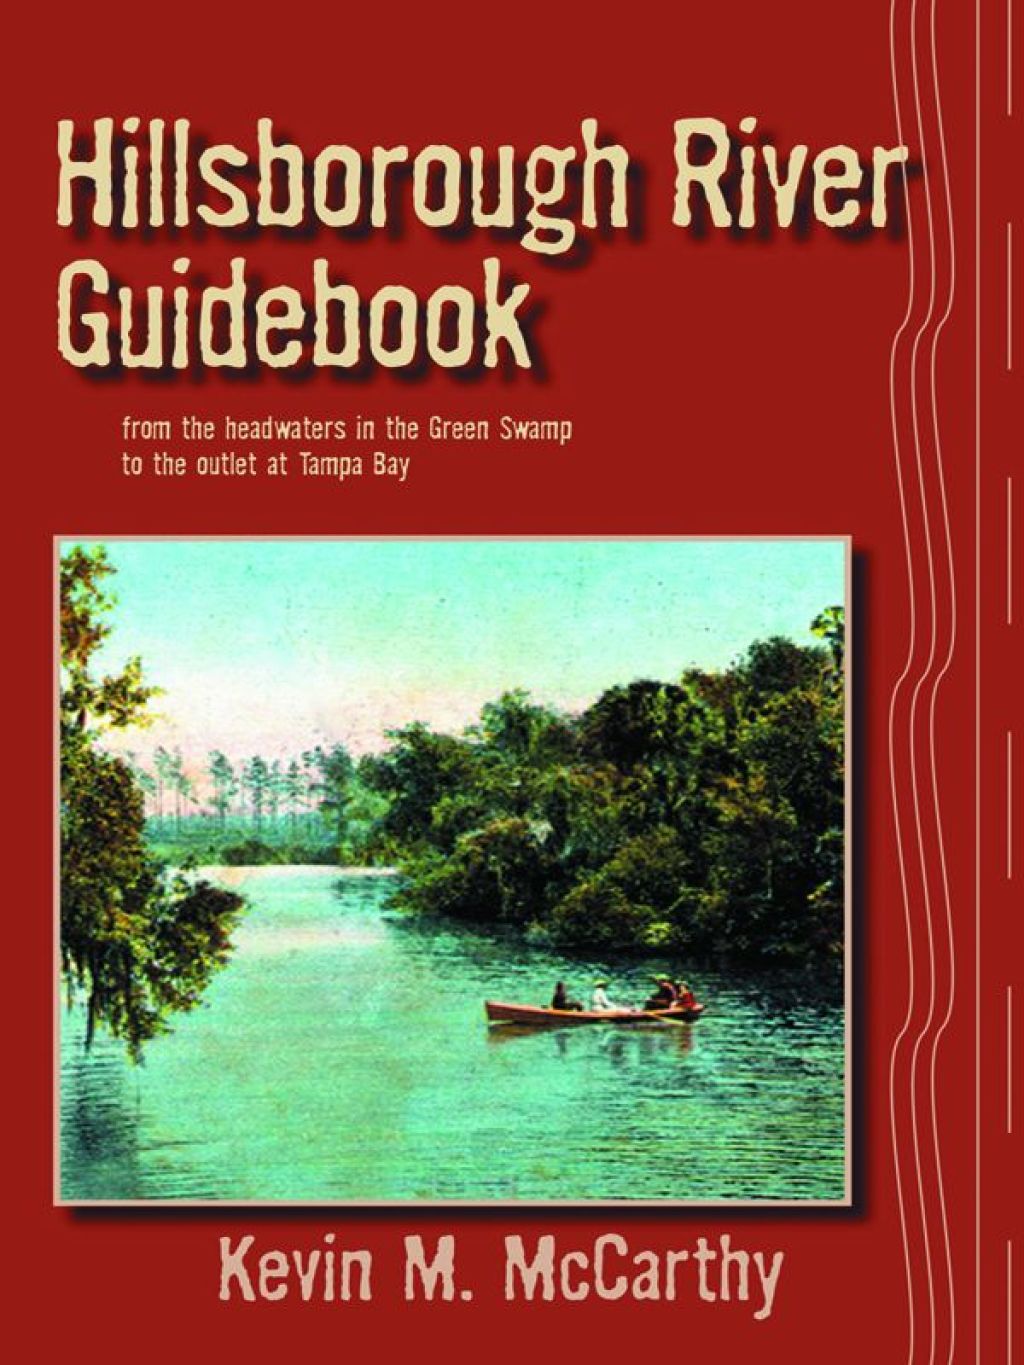 Hillsborough River Guidebook (eBook Rental) - Kevin McCarthy,